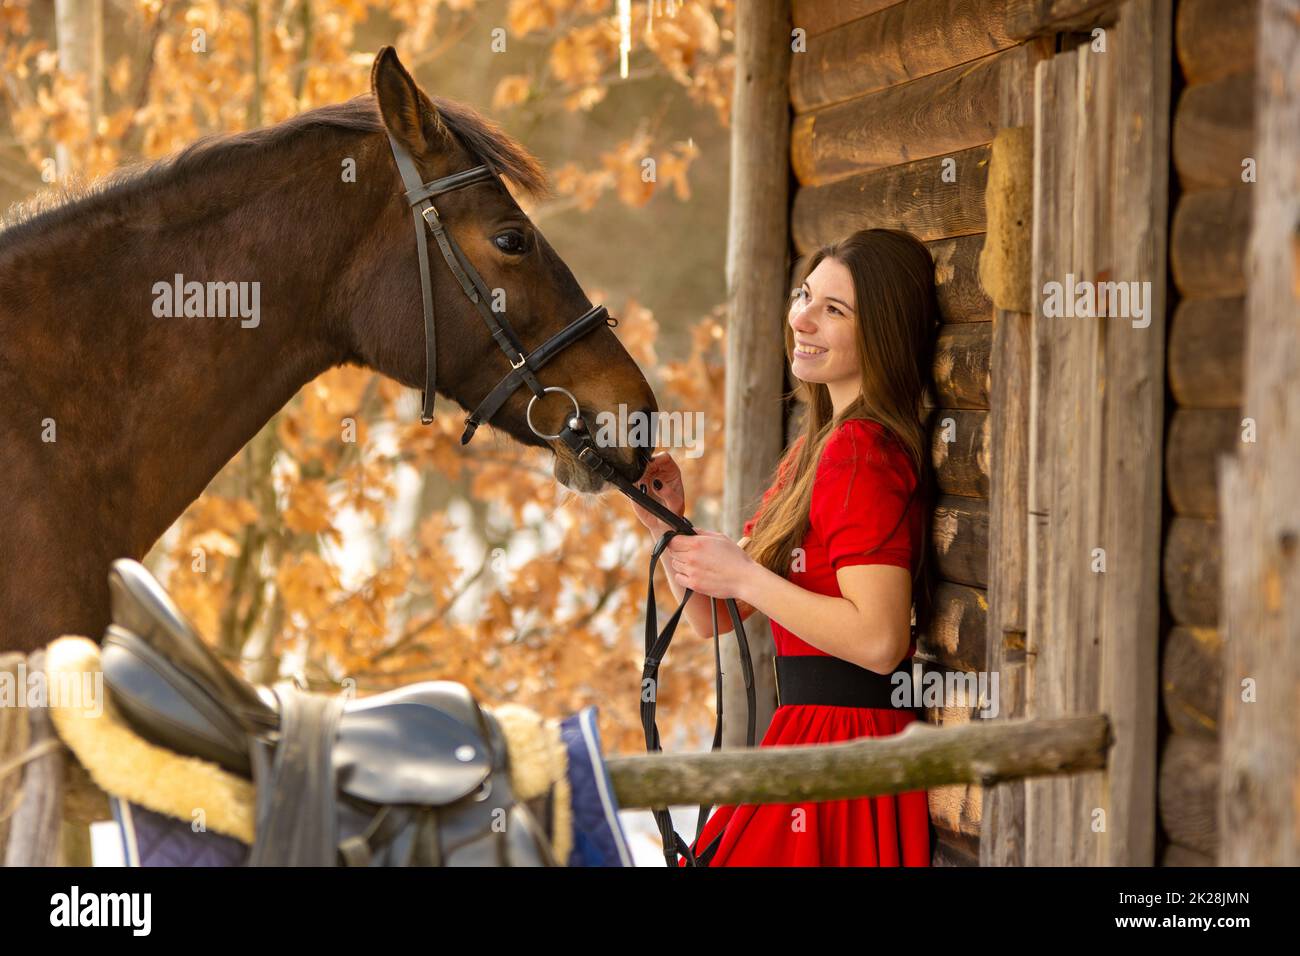 Ritratto di una bella ragazza in un vestito rosso, una ragazza che tiene un cavallo vicino alla briglia, uno sfondo bello di un muro di legno e foresta Foto Stock